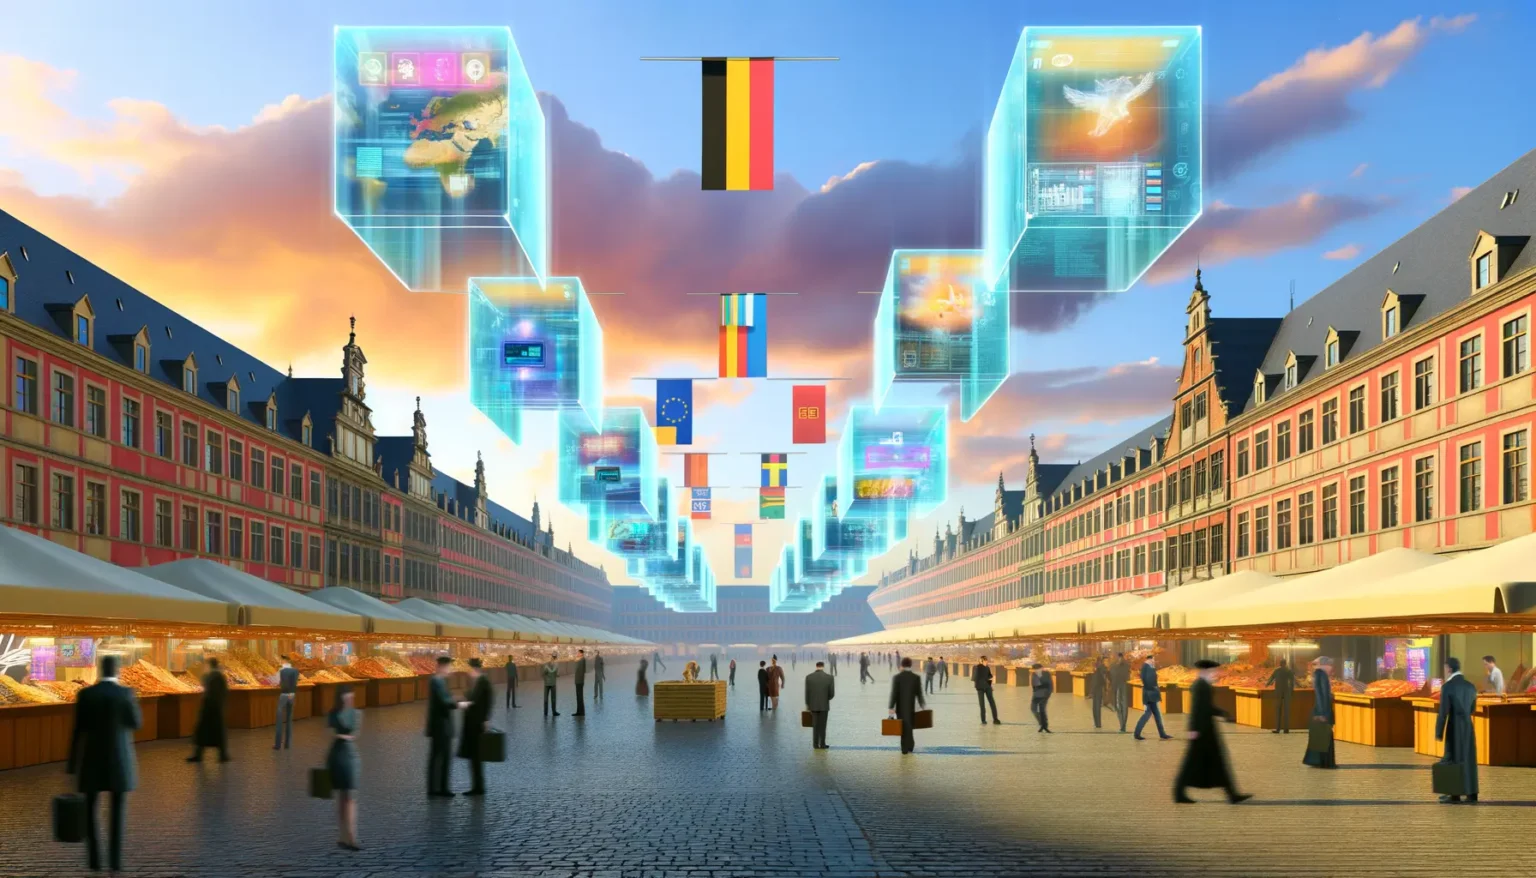 Futuristische Darstellung einer belebten Marktplatzszene mit traditioneller Architektur und schwebenden, holographischen Displays, die verschiedene Daten und Symbole zeigen, vor einem Himmel mit dramatischen Wolken bei Sonnenuntergang.